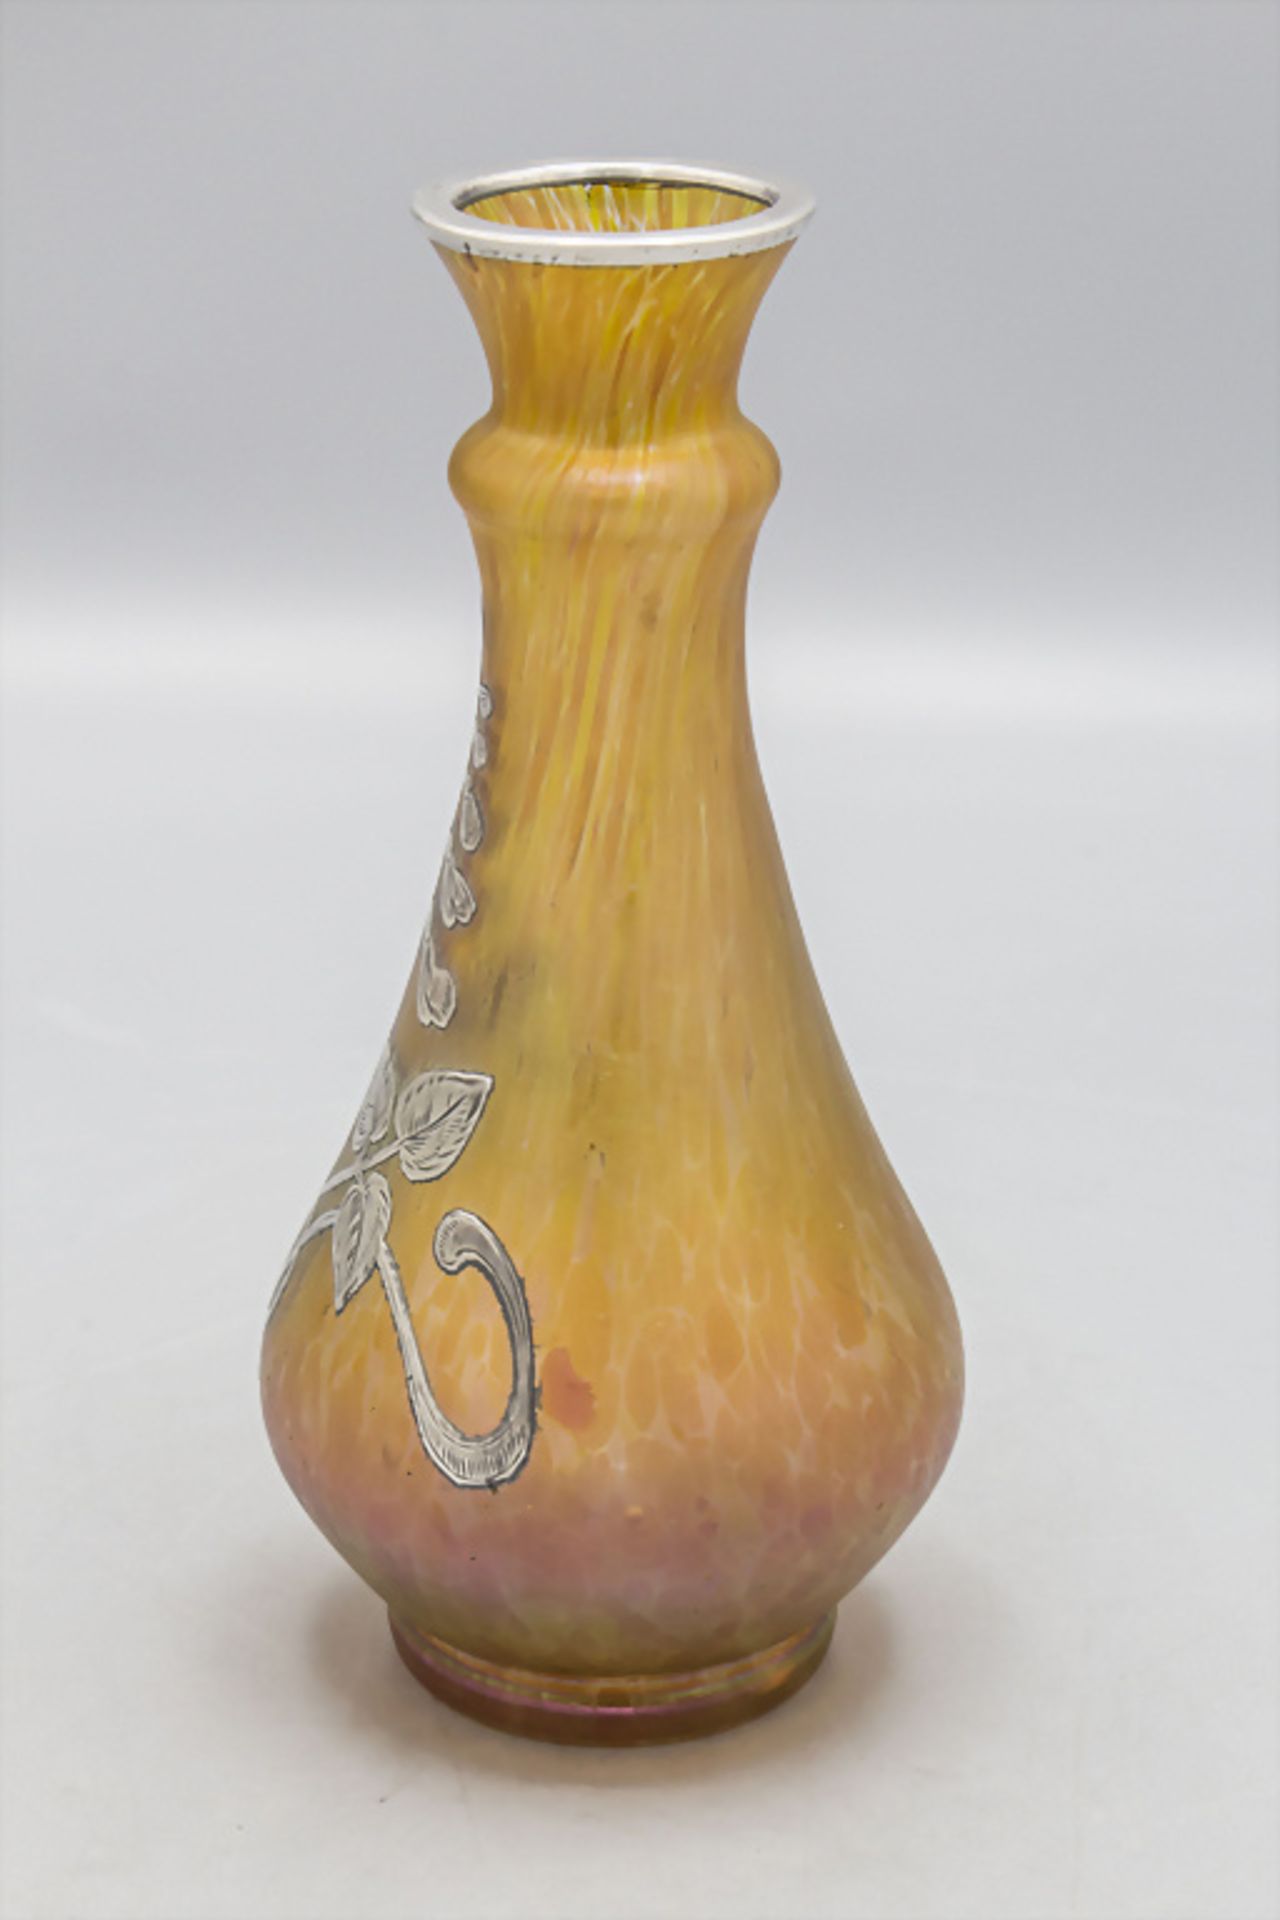 Jugendstil Vase / An Art Nouverau glass vase, Johann Loetz Witwe, Klostermühle, um 1900 - Image 2 of 5